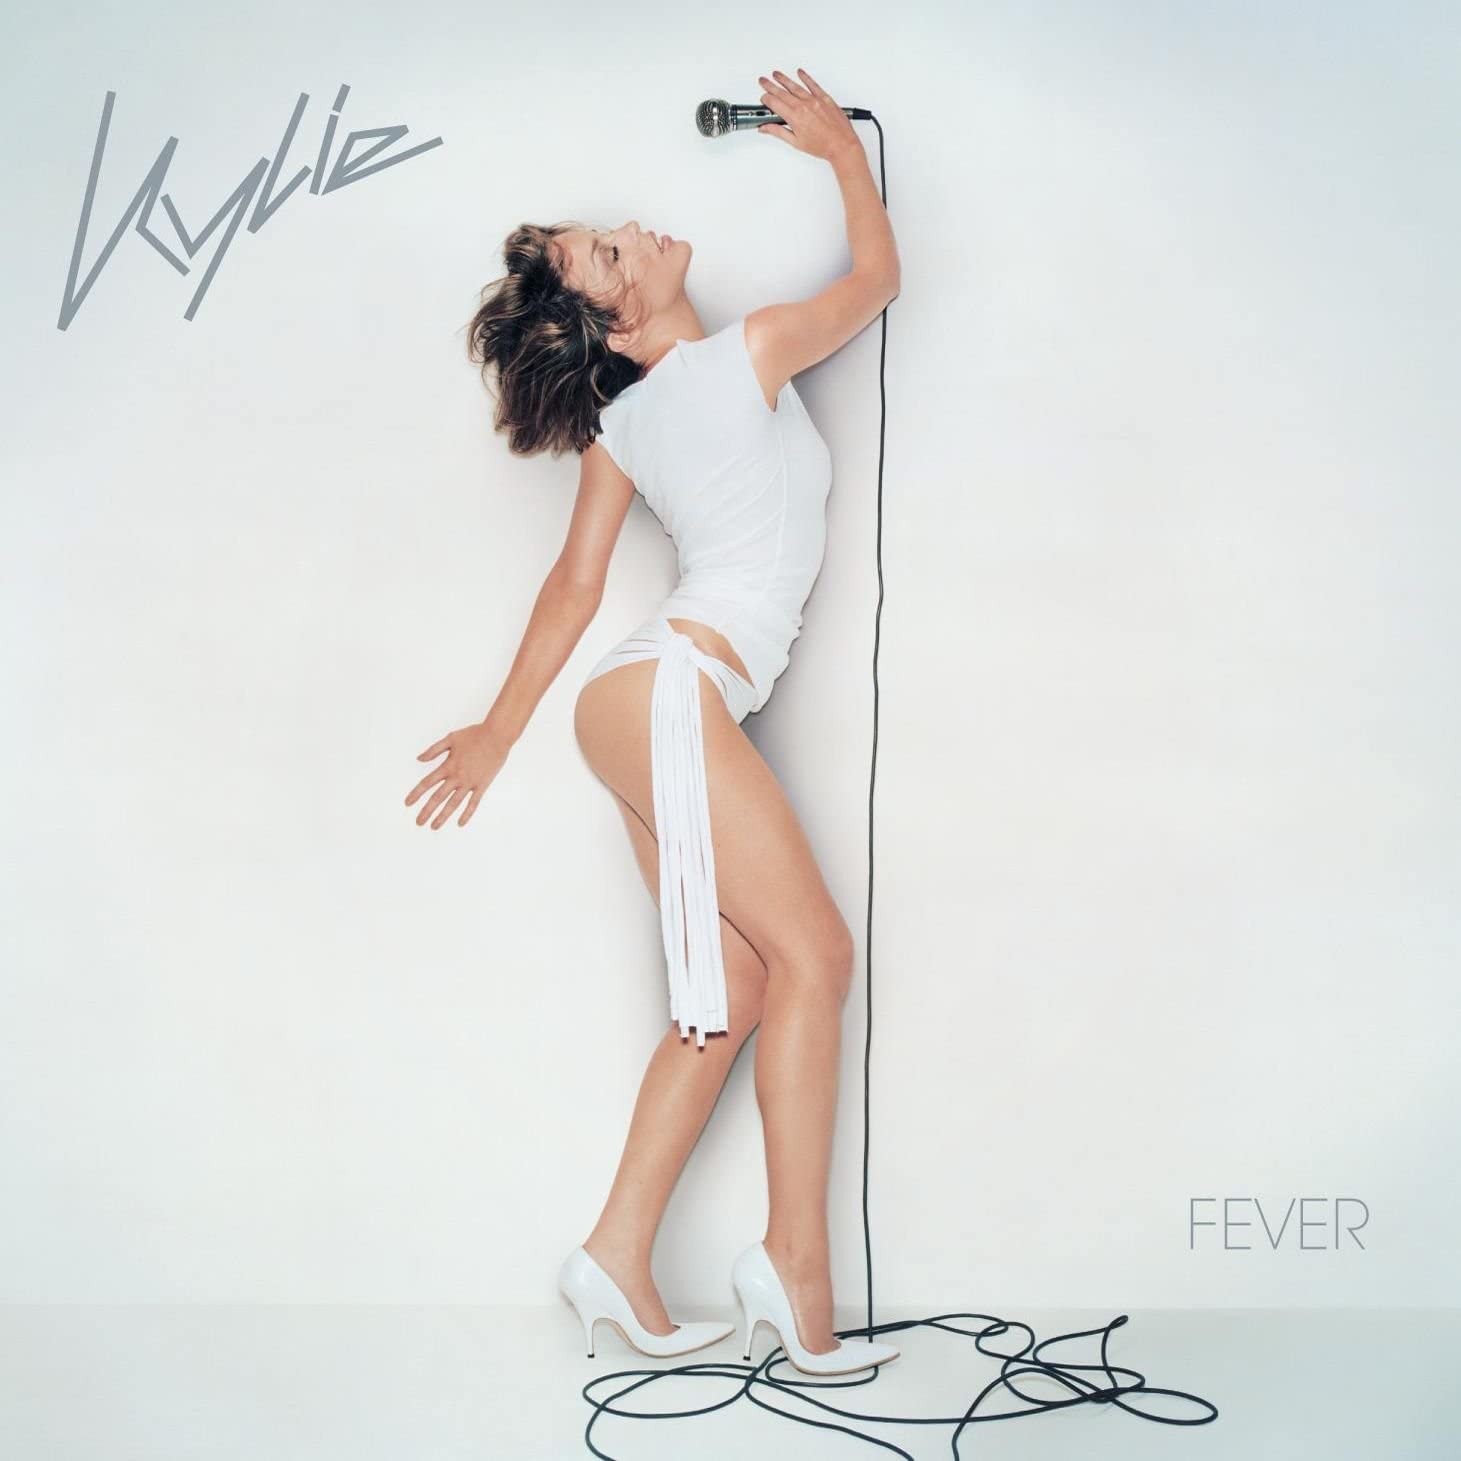 The album artwork for Kylie Minogue’s Fever